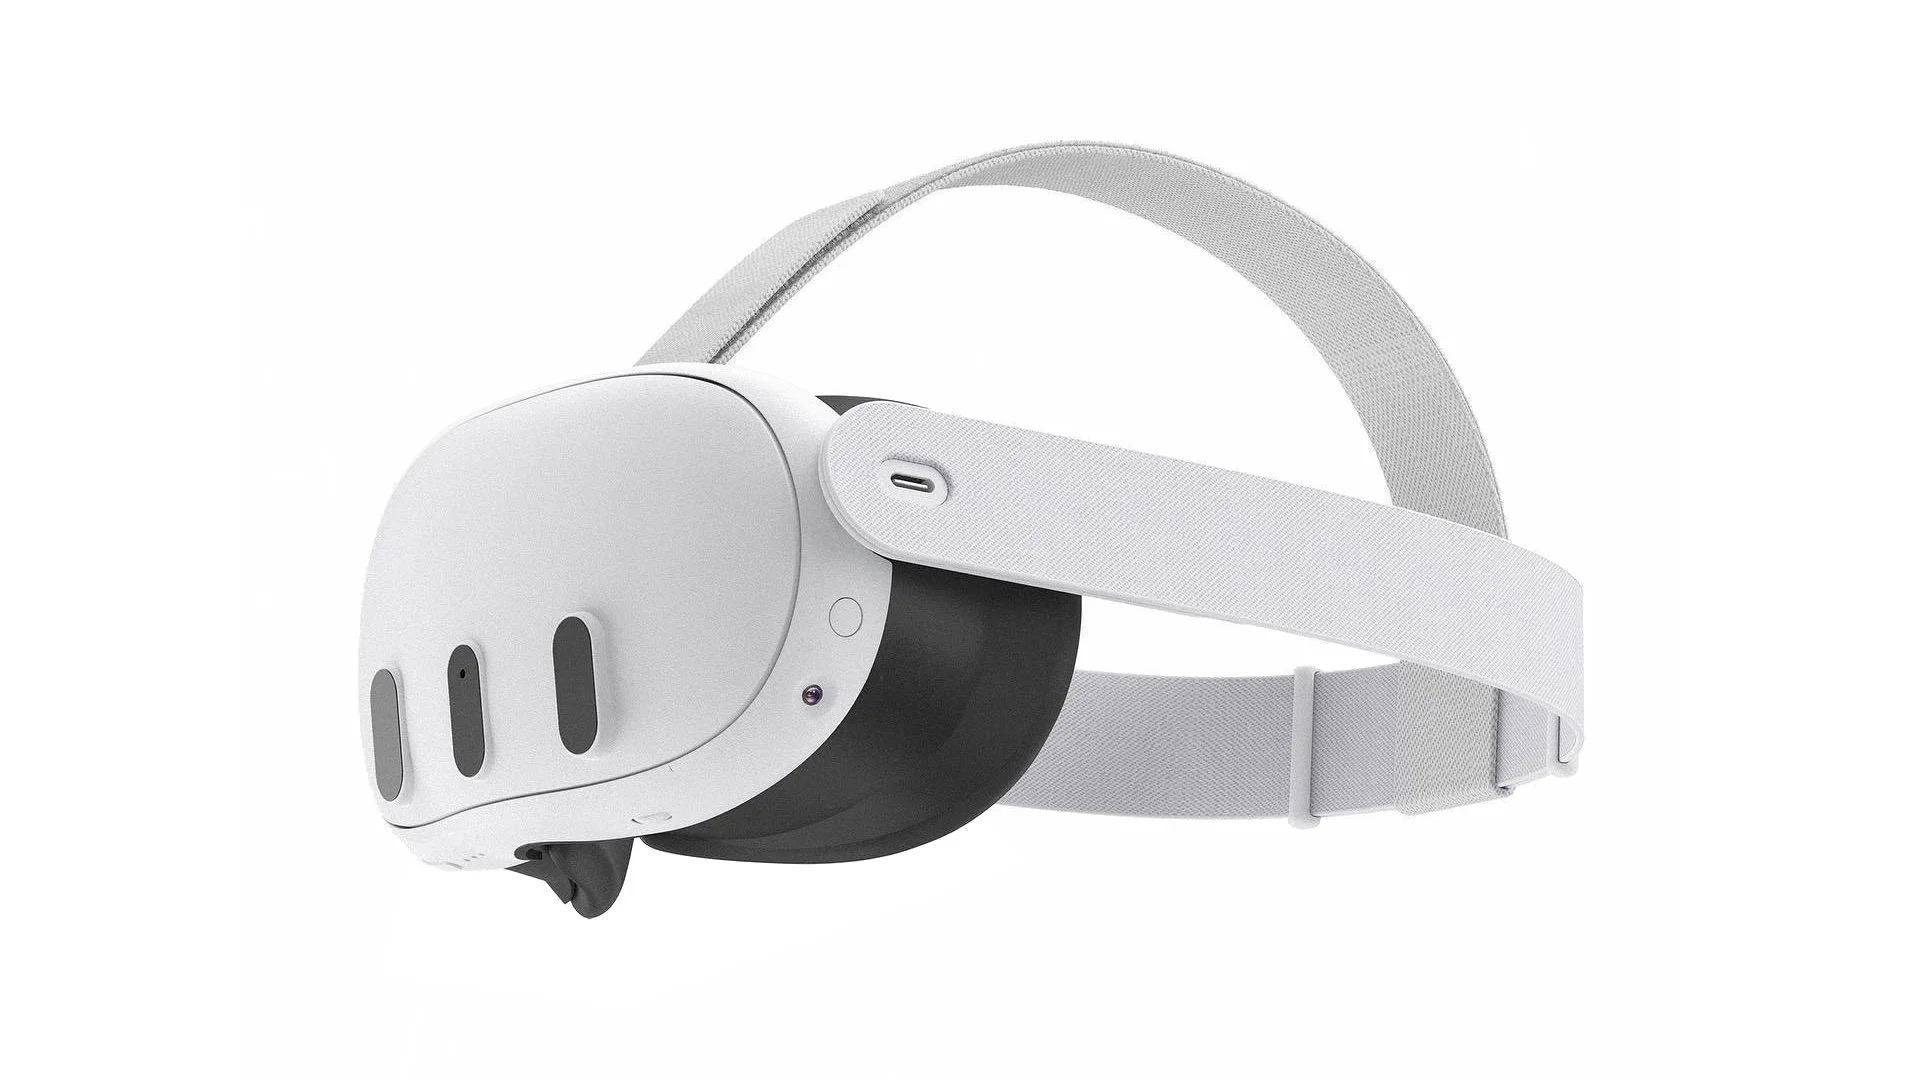 Zuckerberg anuncia por sorpresa su nuevo visor de realidad virtual: así es Meta  Quest 3